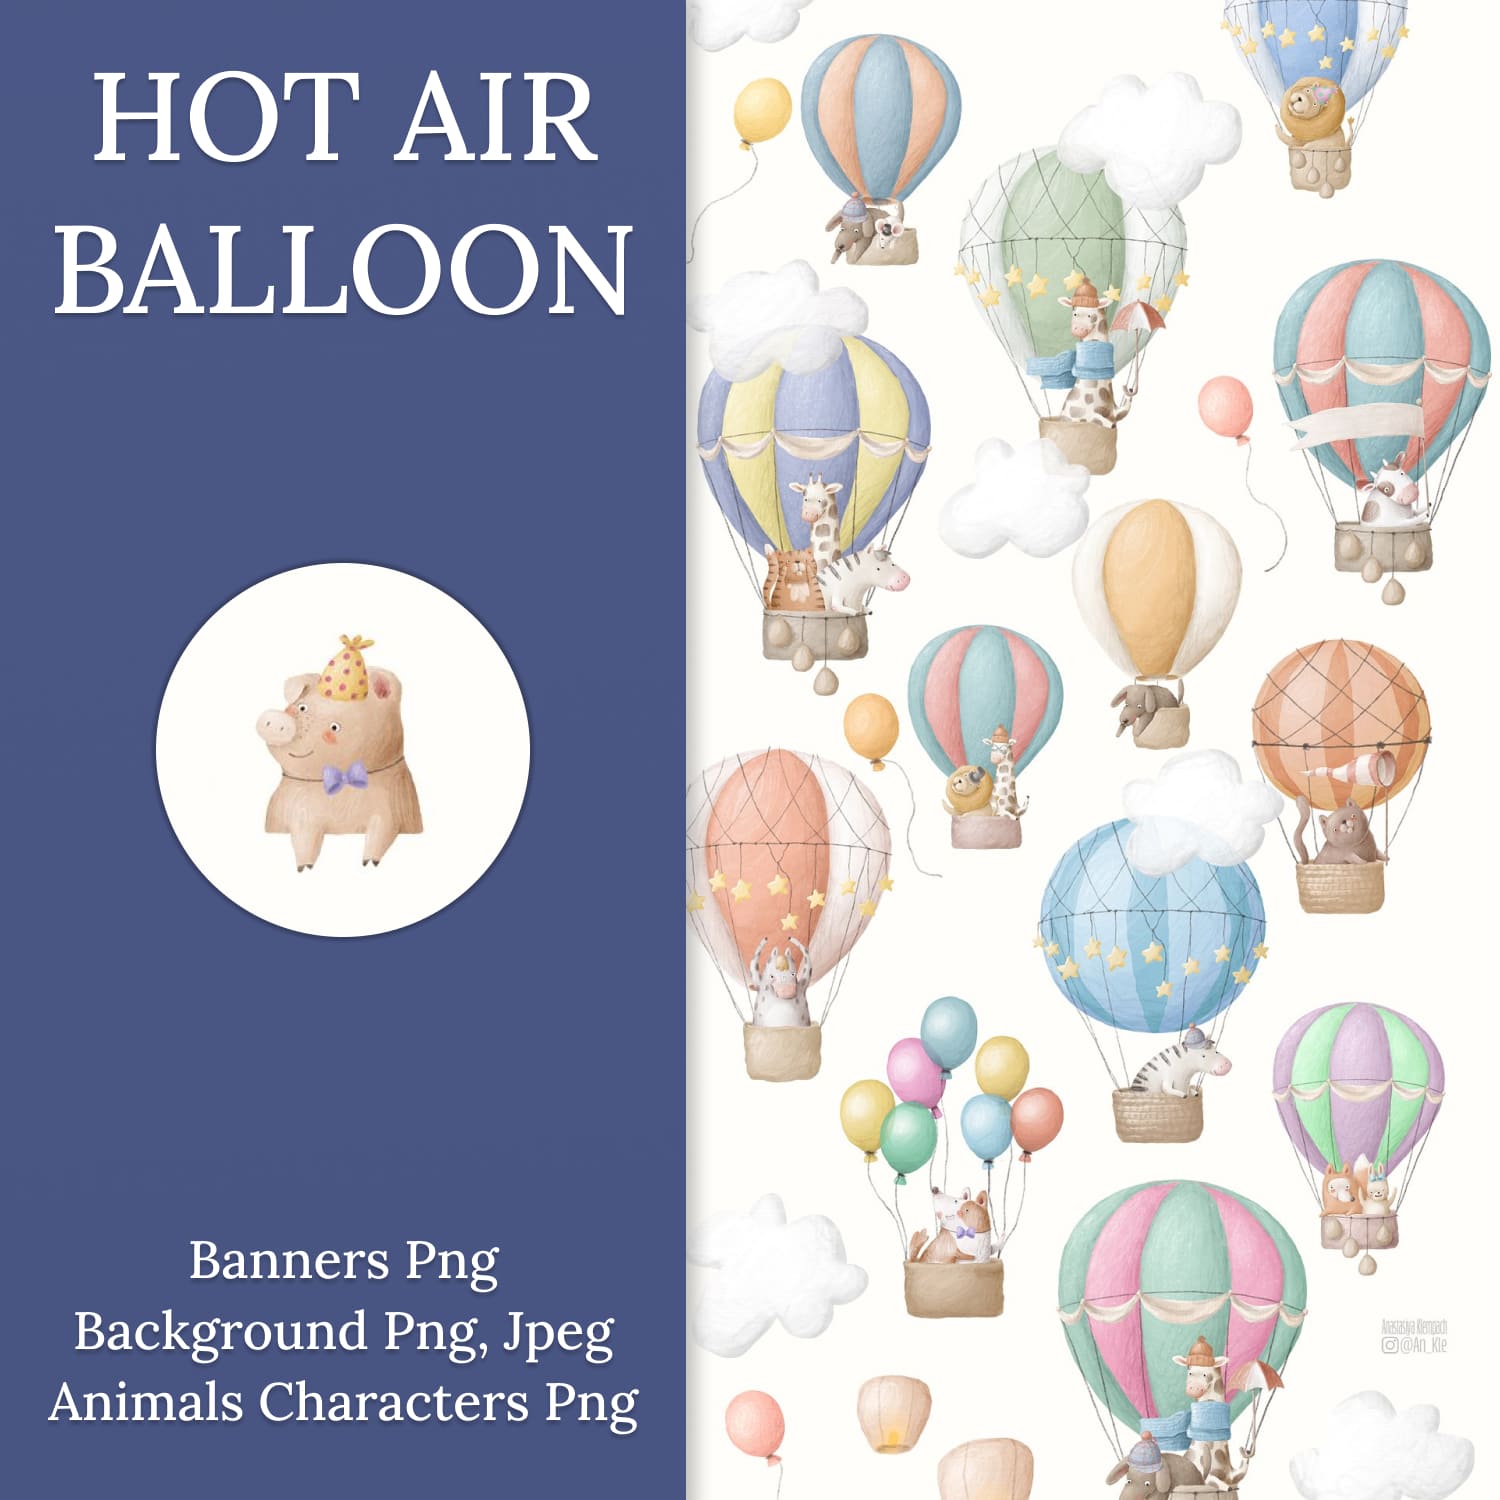 Hot Air Balloon.